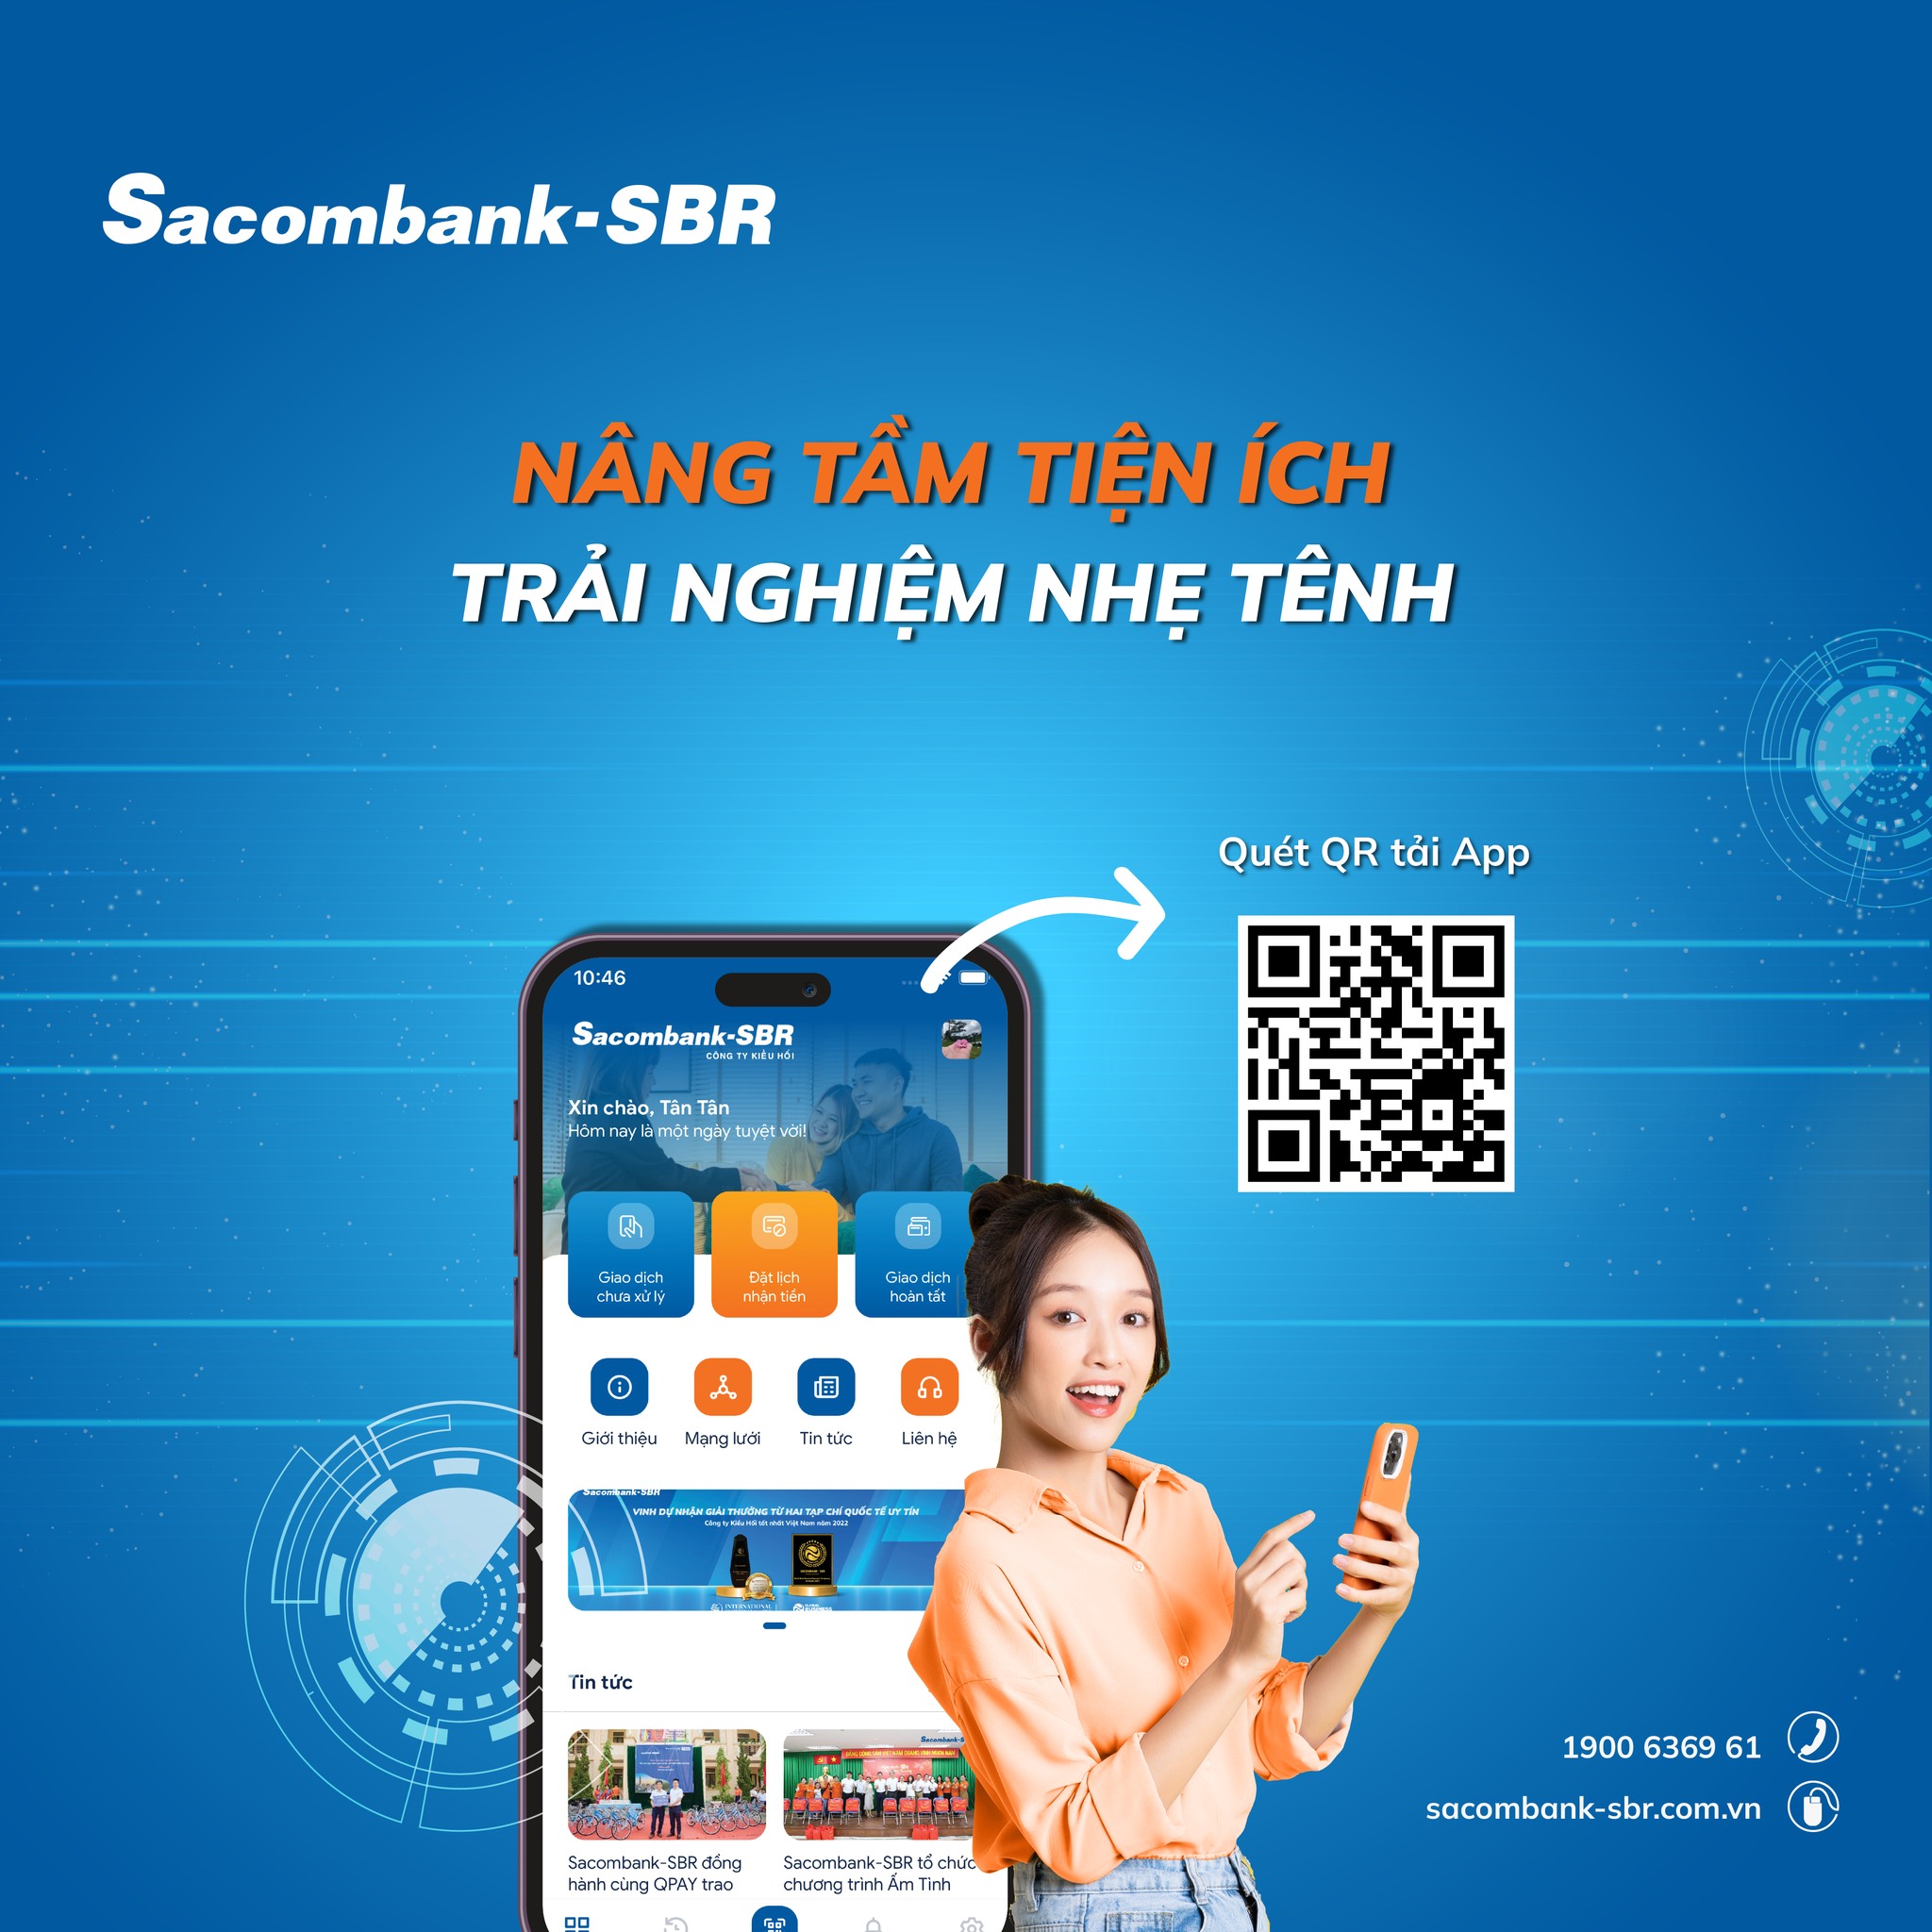 Sacombank-SBR Care: Ứng dụng tra cứu và Đặt lịch giao dịch kiều hối thông minh